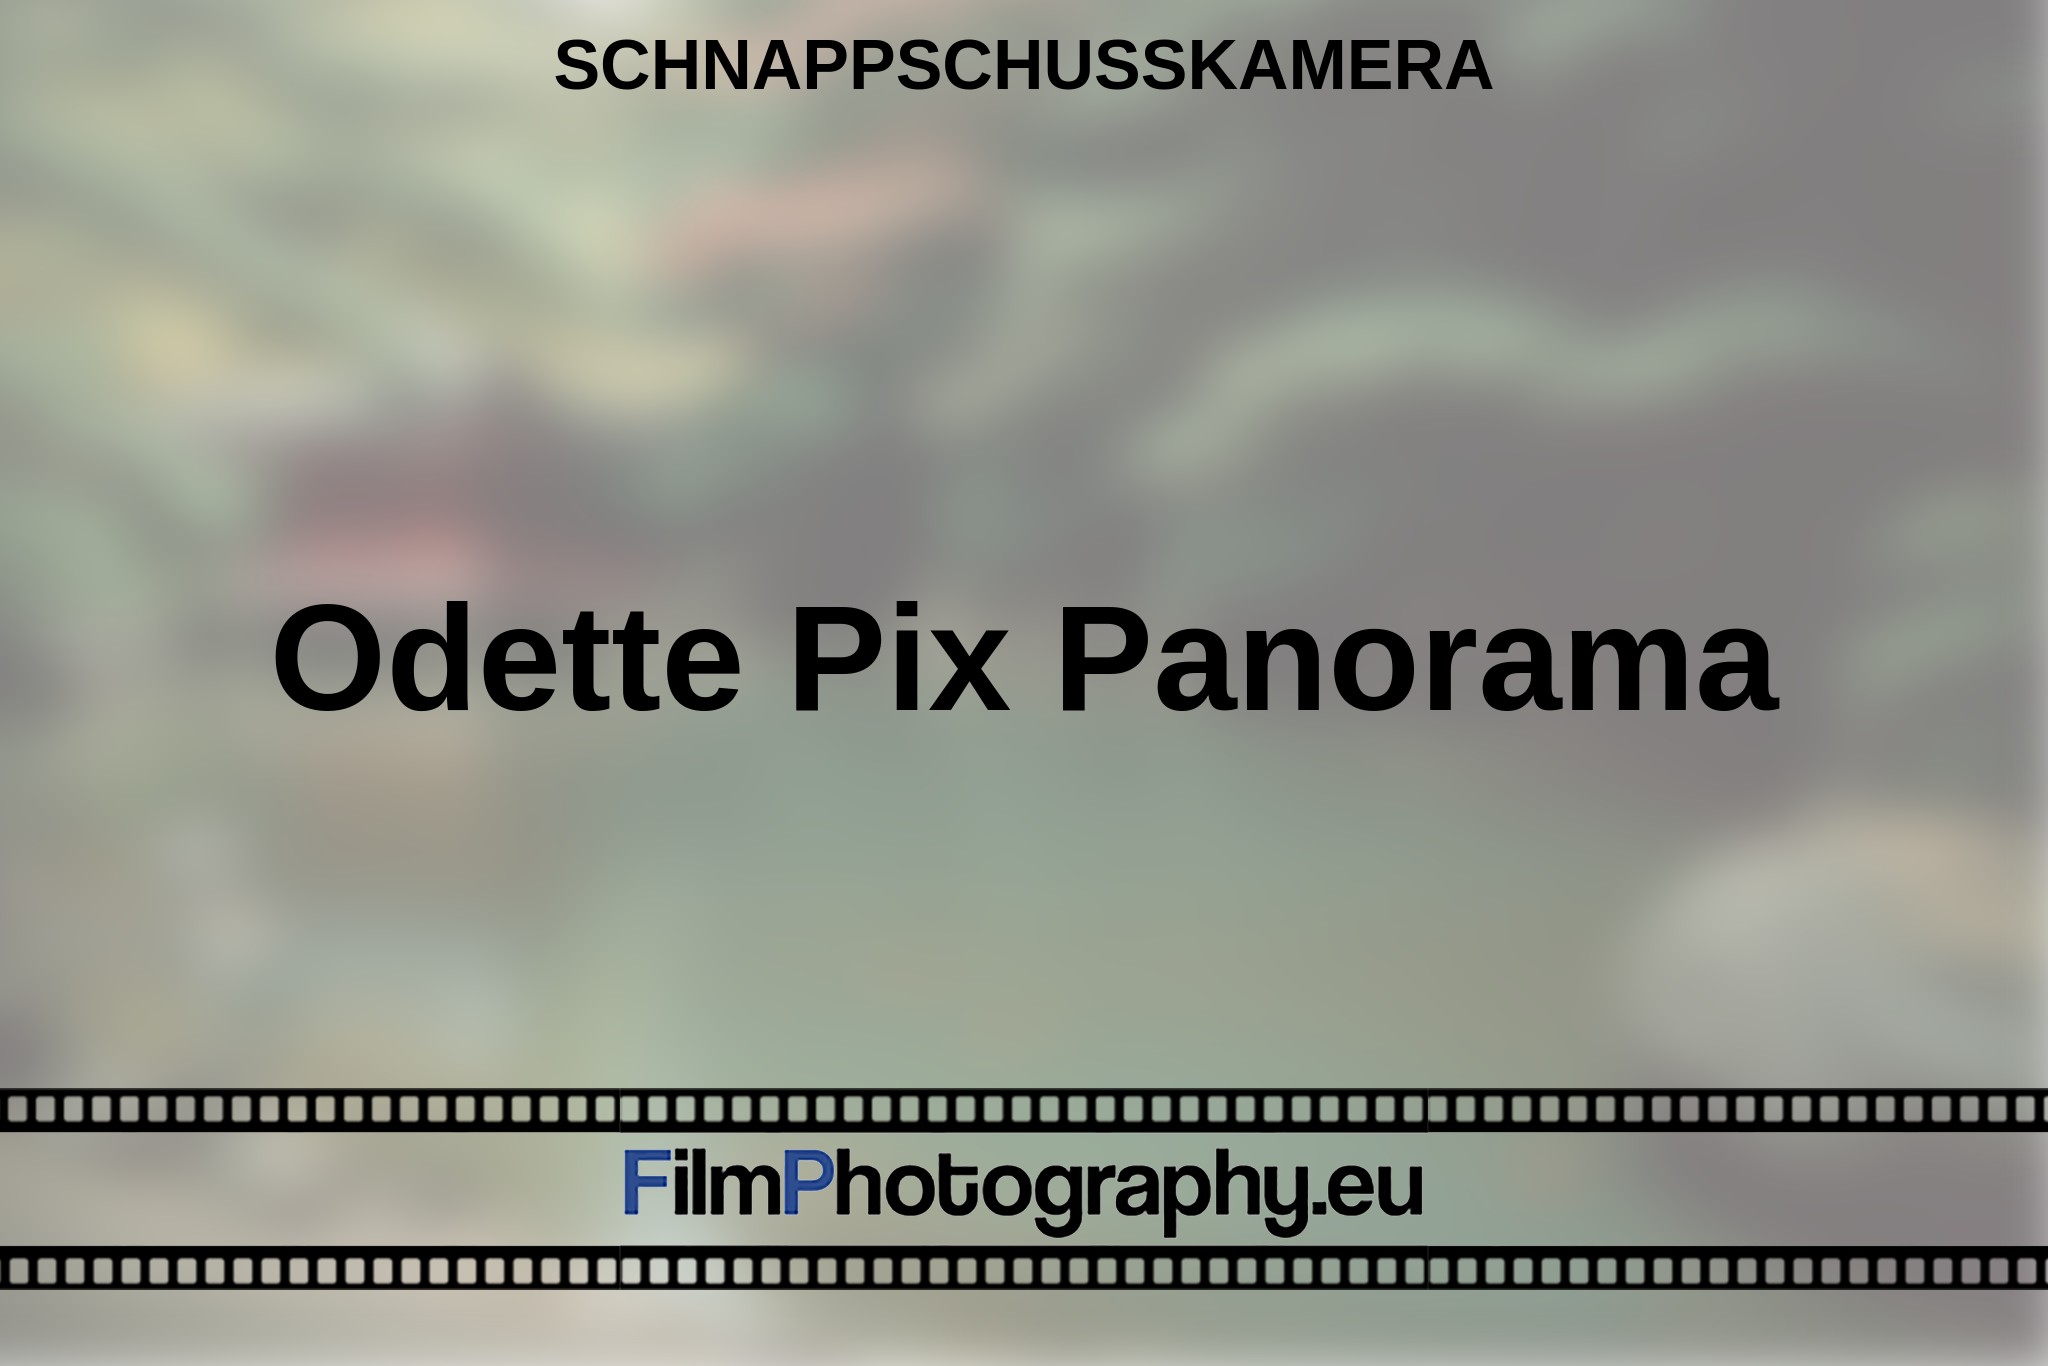 odette-pix-panorama-schnappschusskamera-bnv.jpg